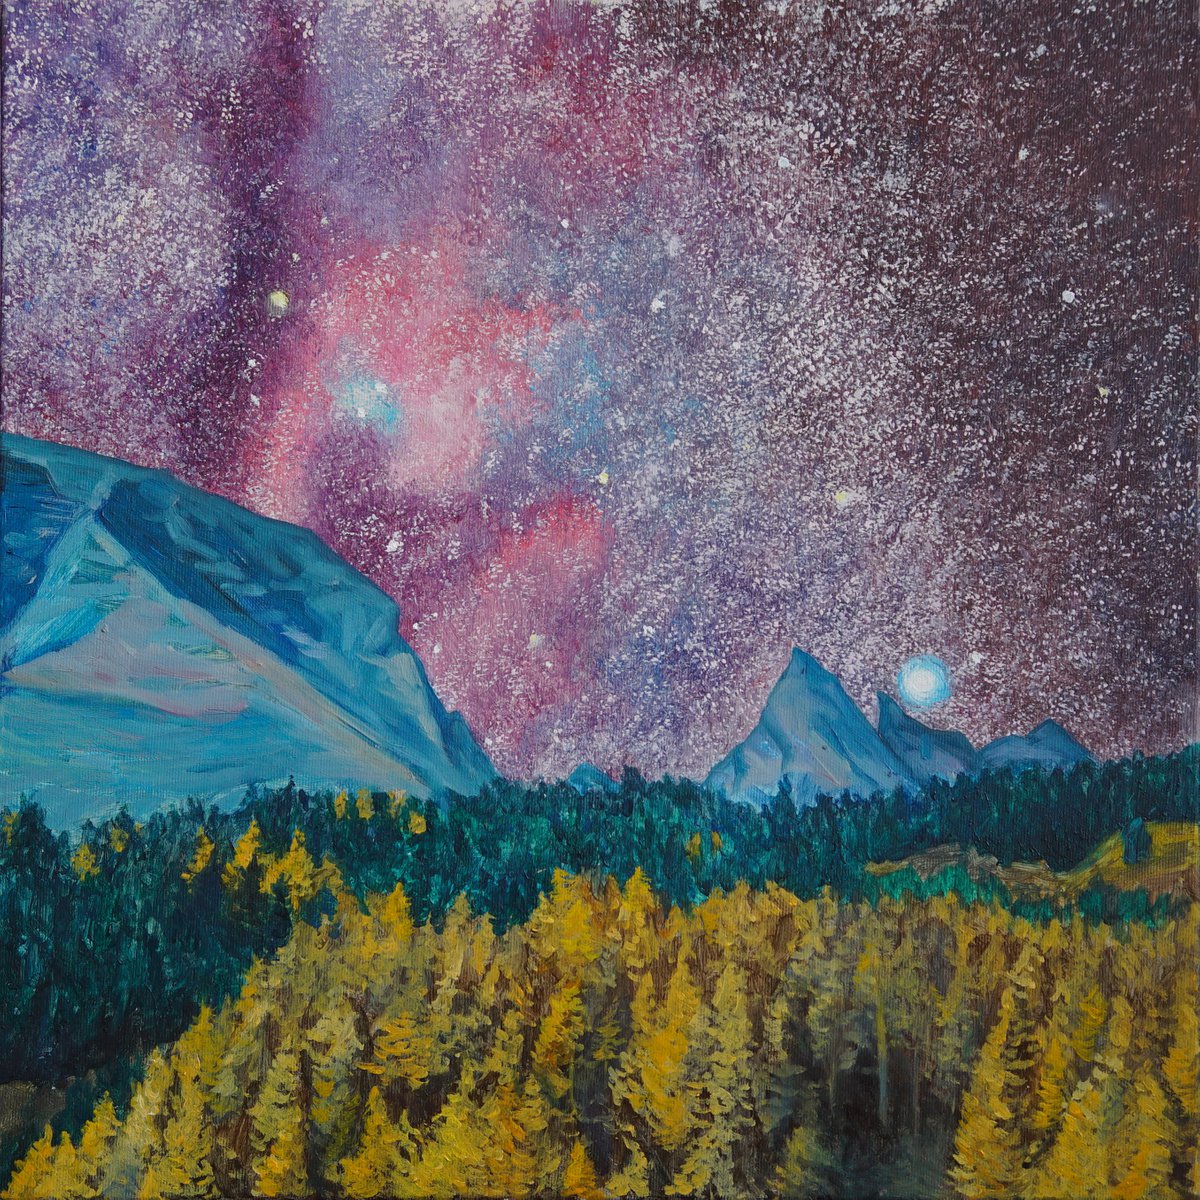 Mountain Night Sky 2 by Agnieszka Florczyk